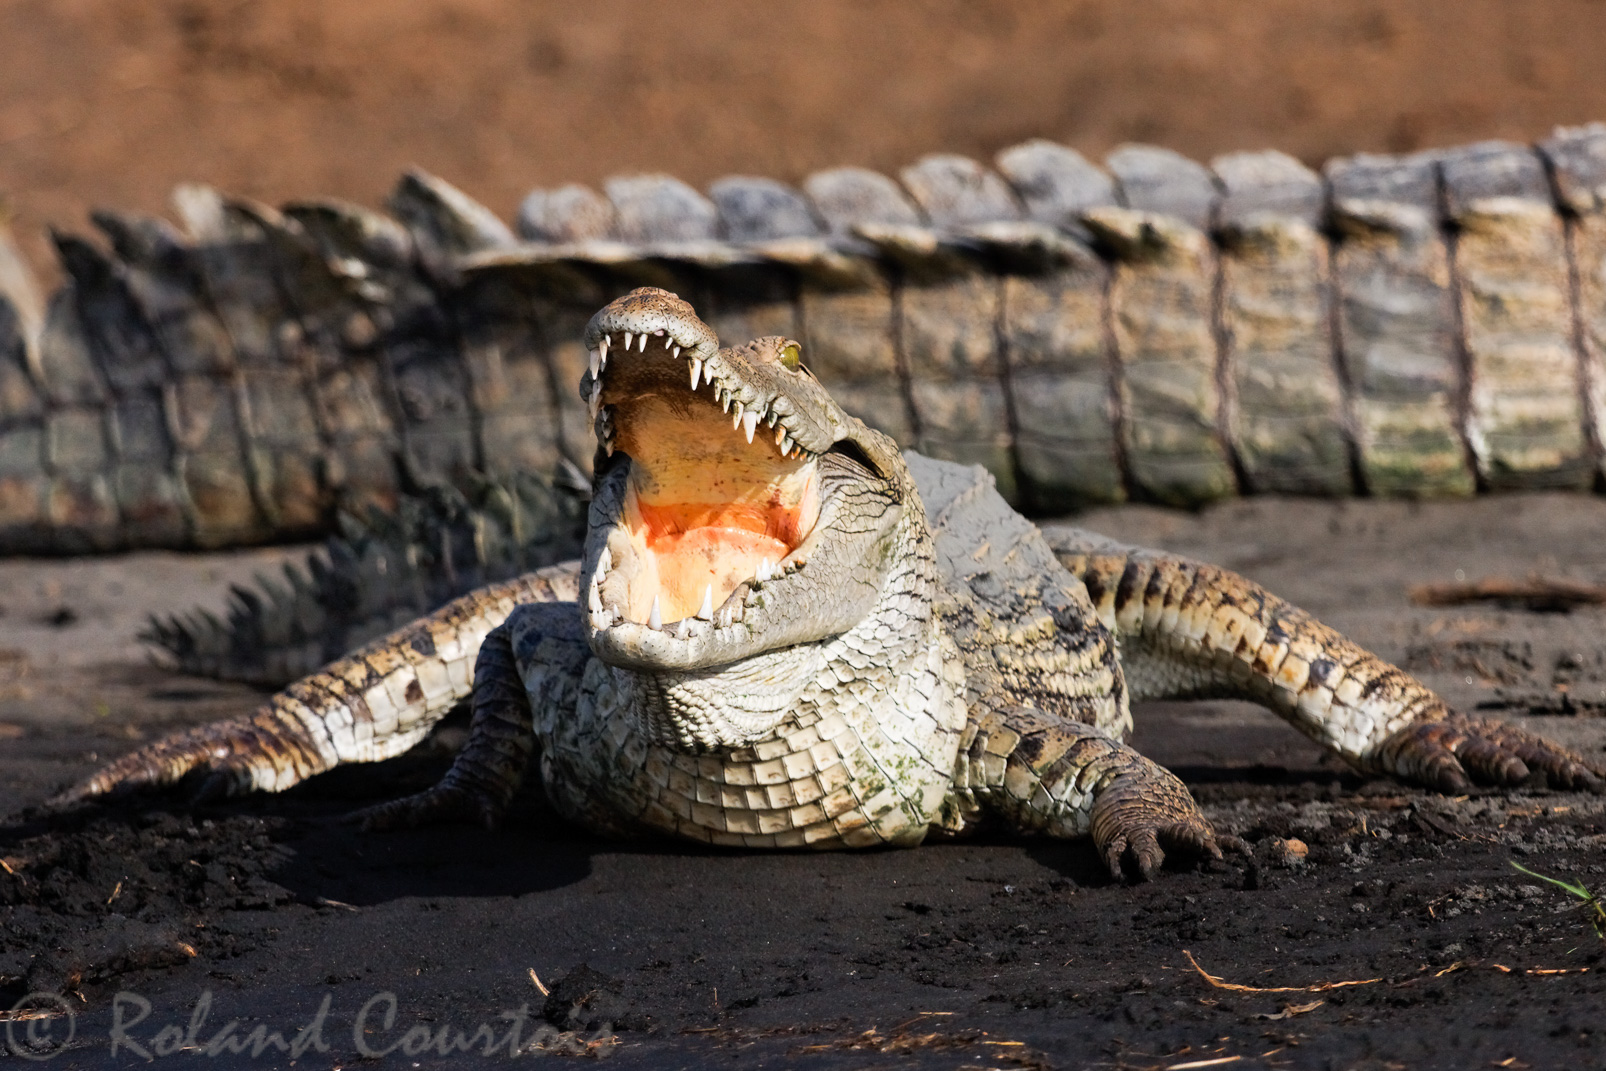 Les plus grands crocodiles d'Afrique